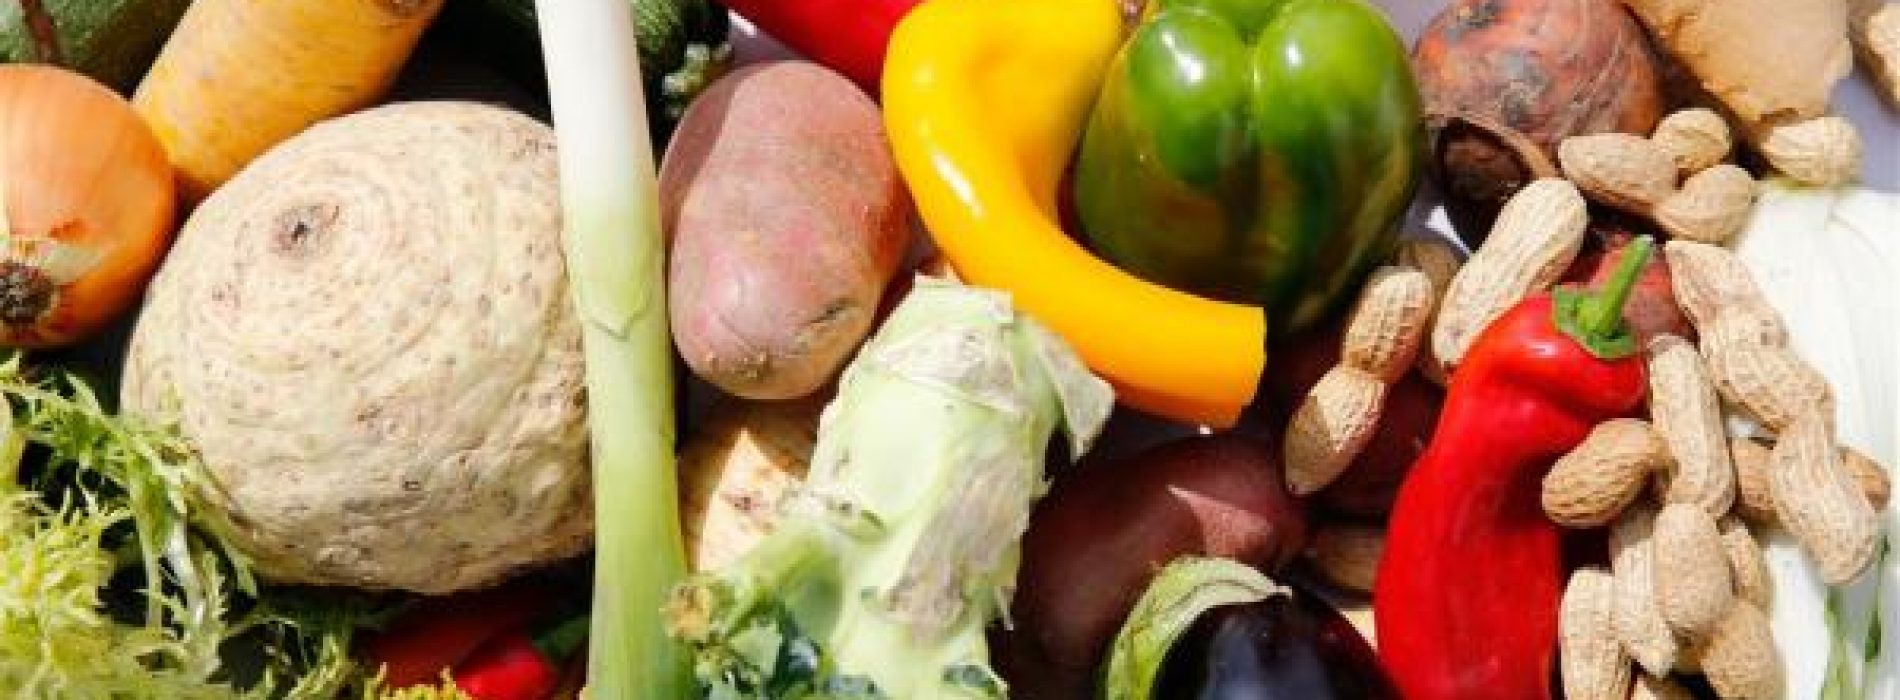 De voordelen van groente en fruit zijn twintig jaar later nog steeds zichtbaar